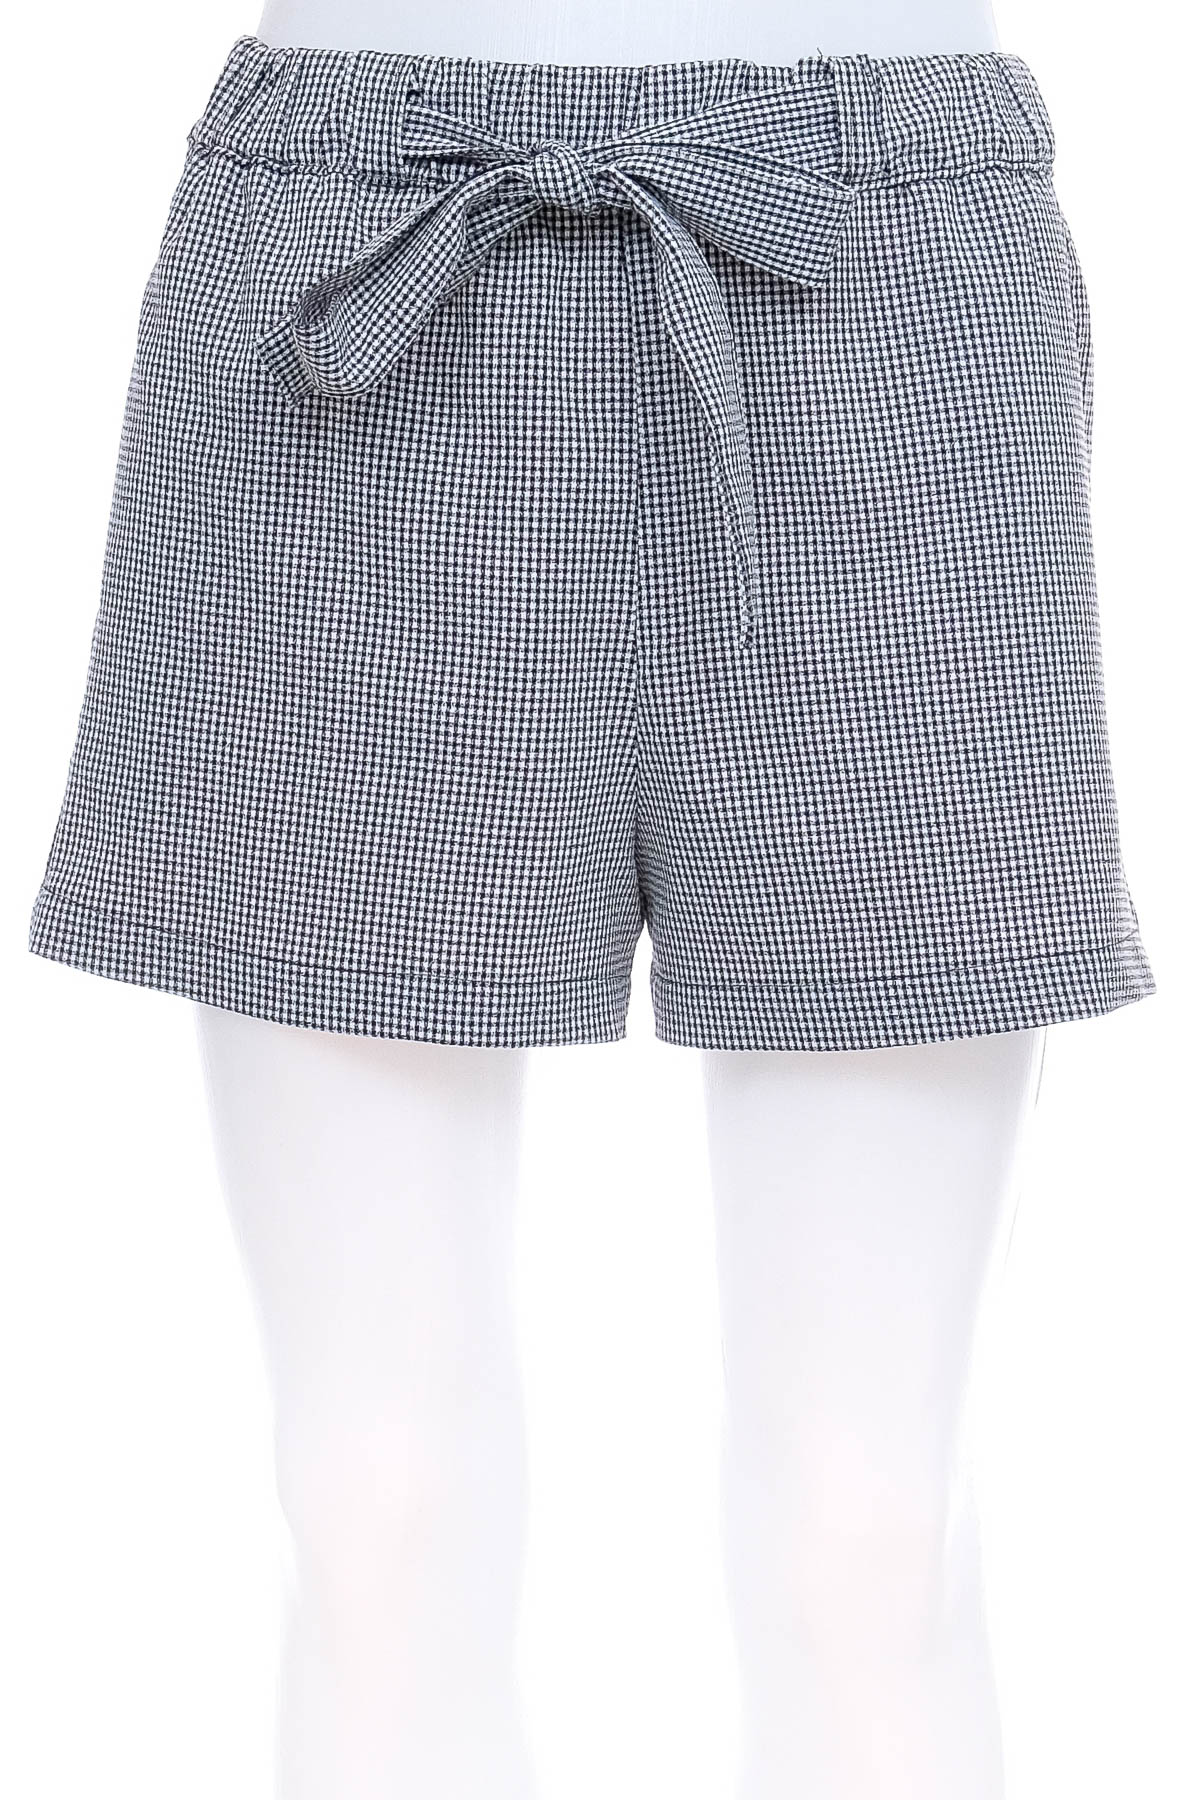 Female shorts - Pull & Bear - 0